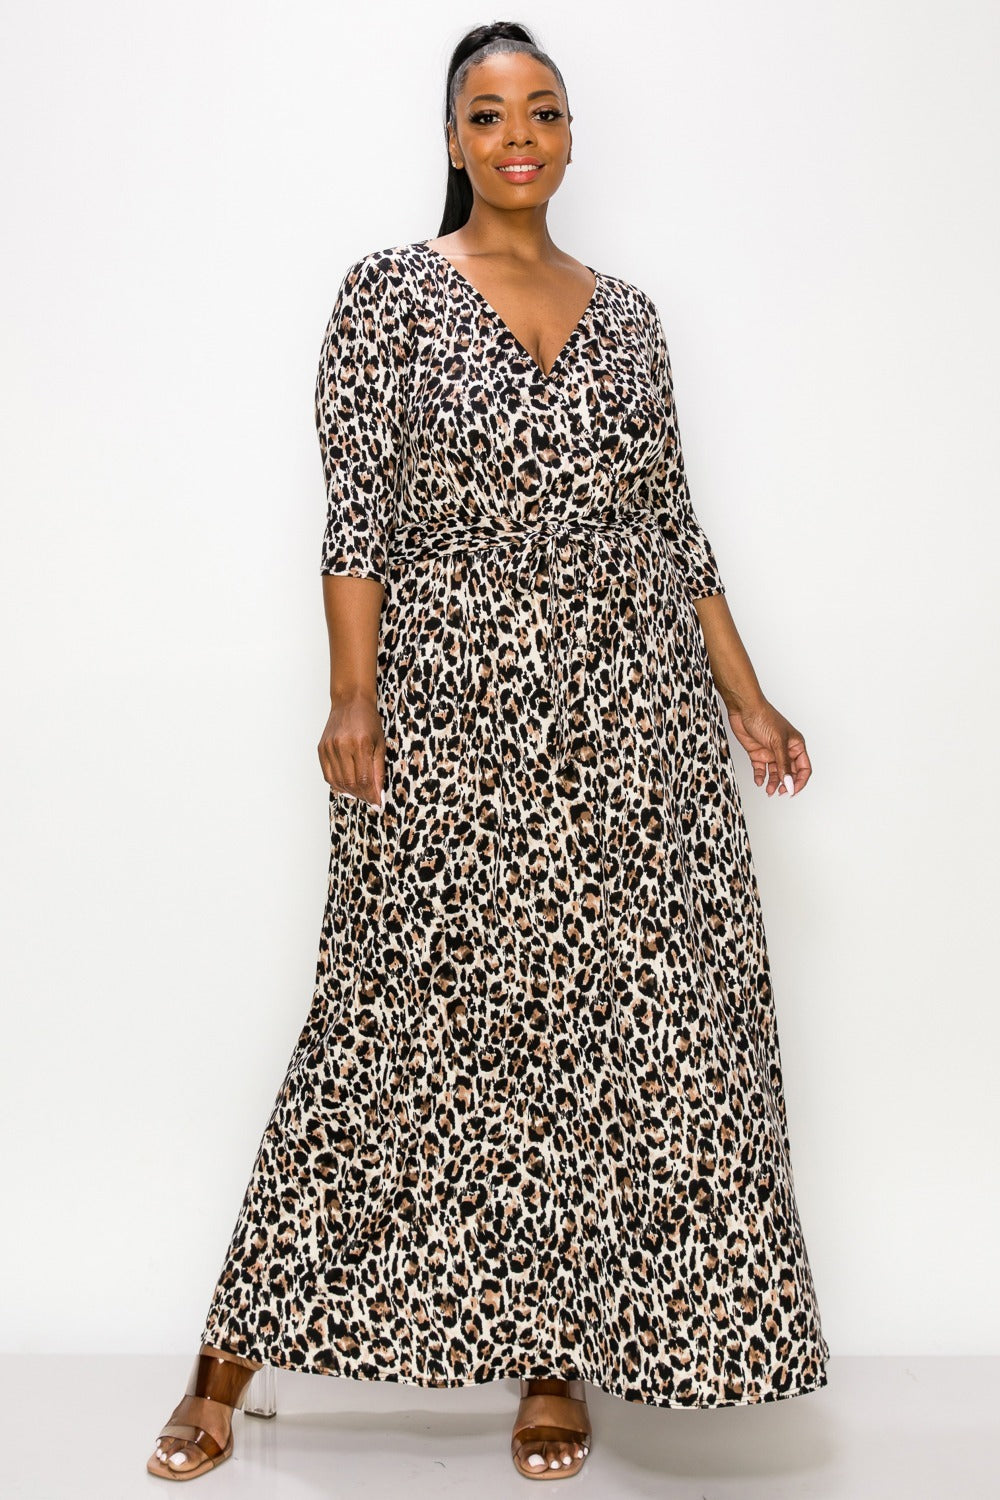 Symoné Cheetah Print Wrap Dress - L I V D